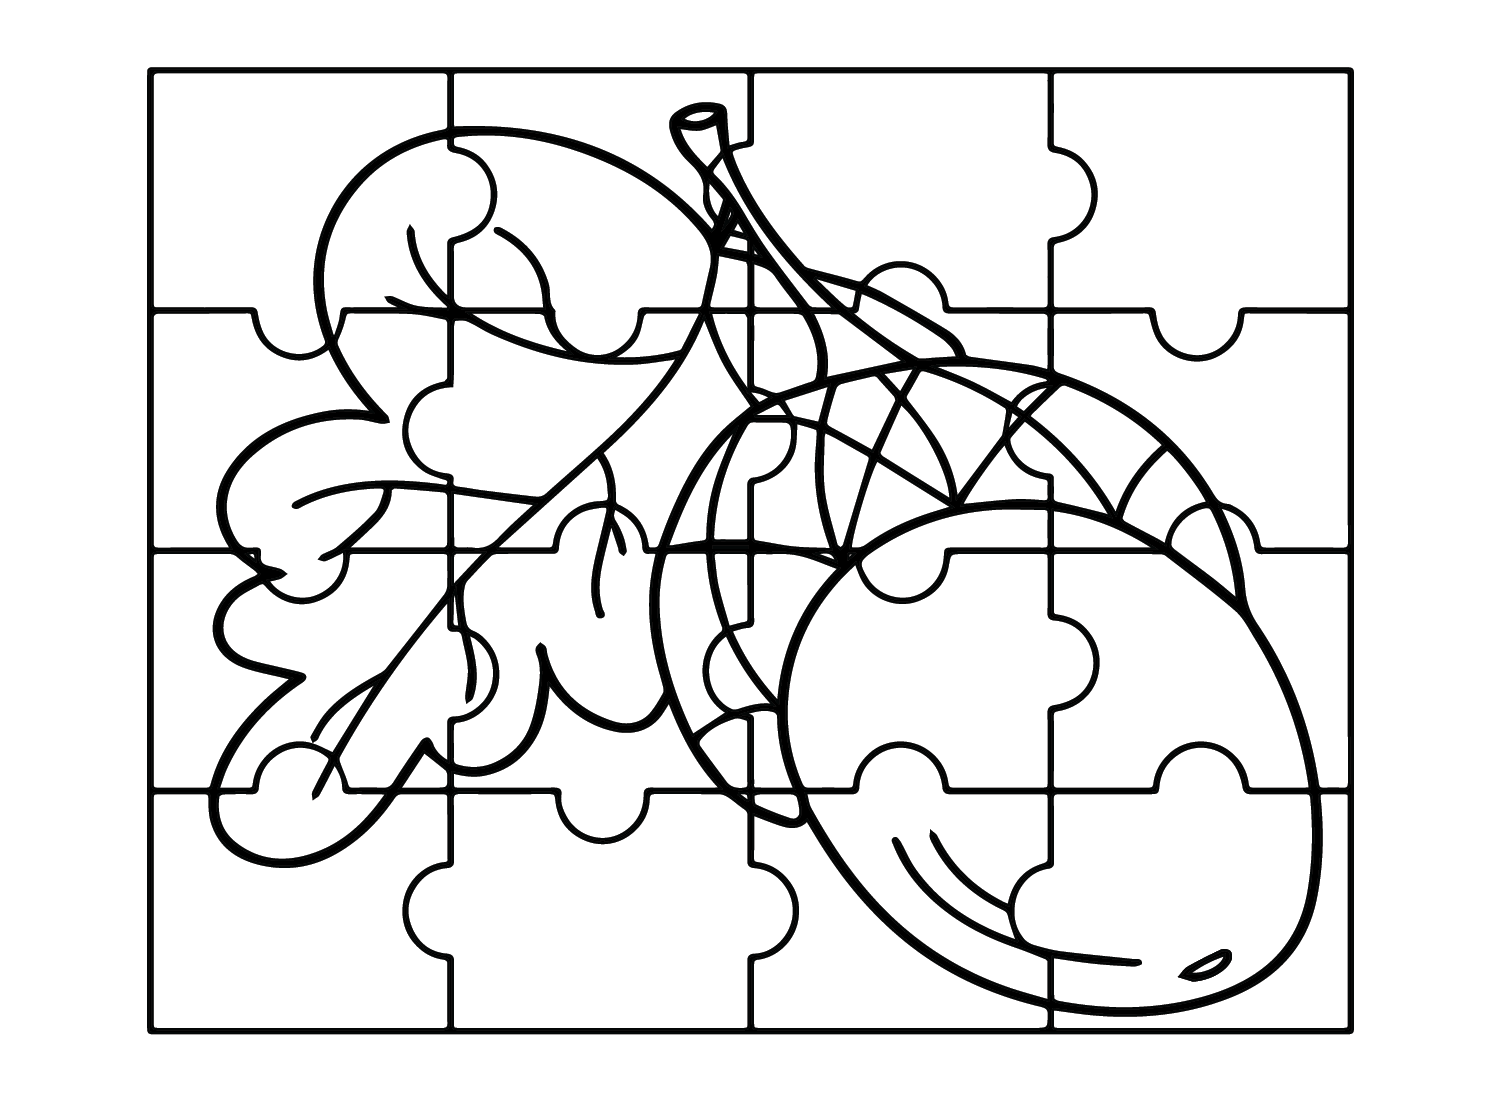 Puzzle-Zeichnung aus dem Puzzle